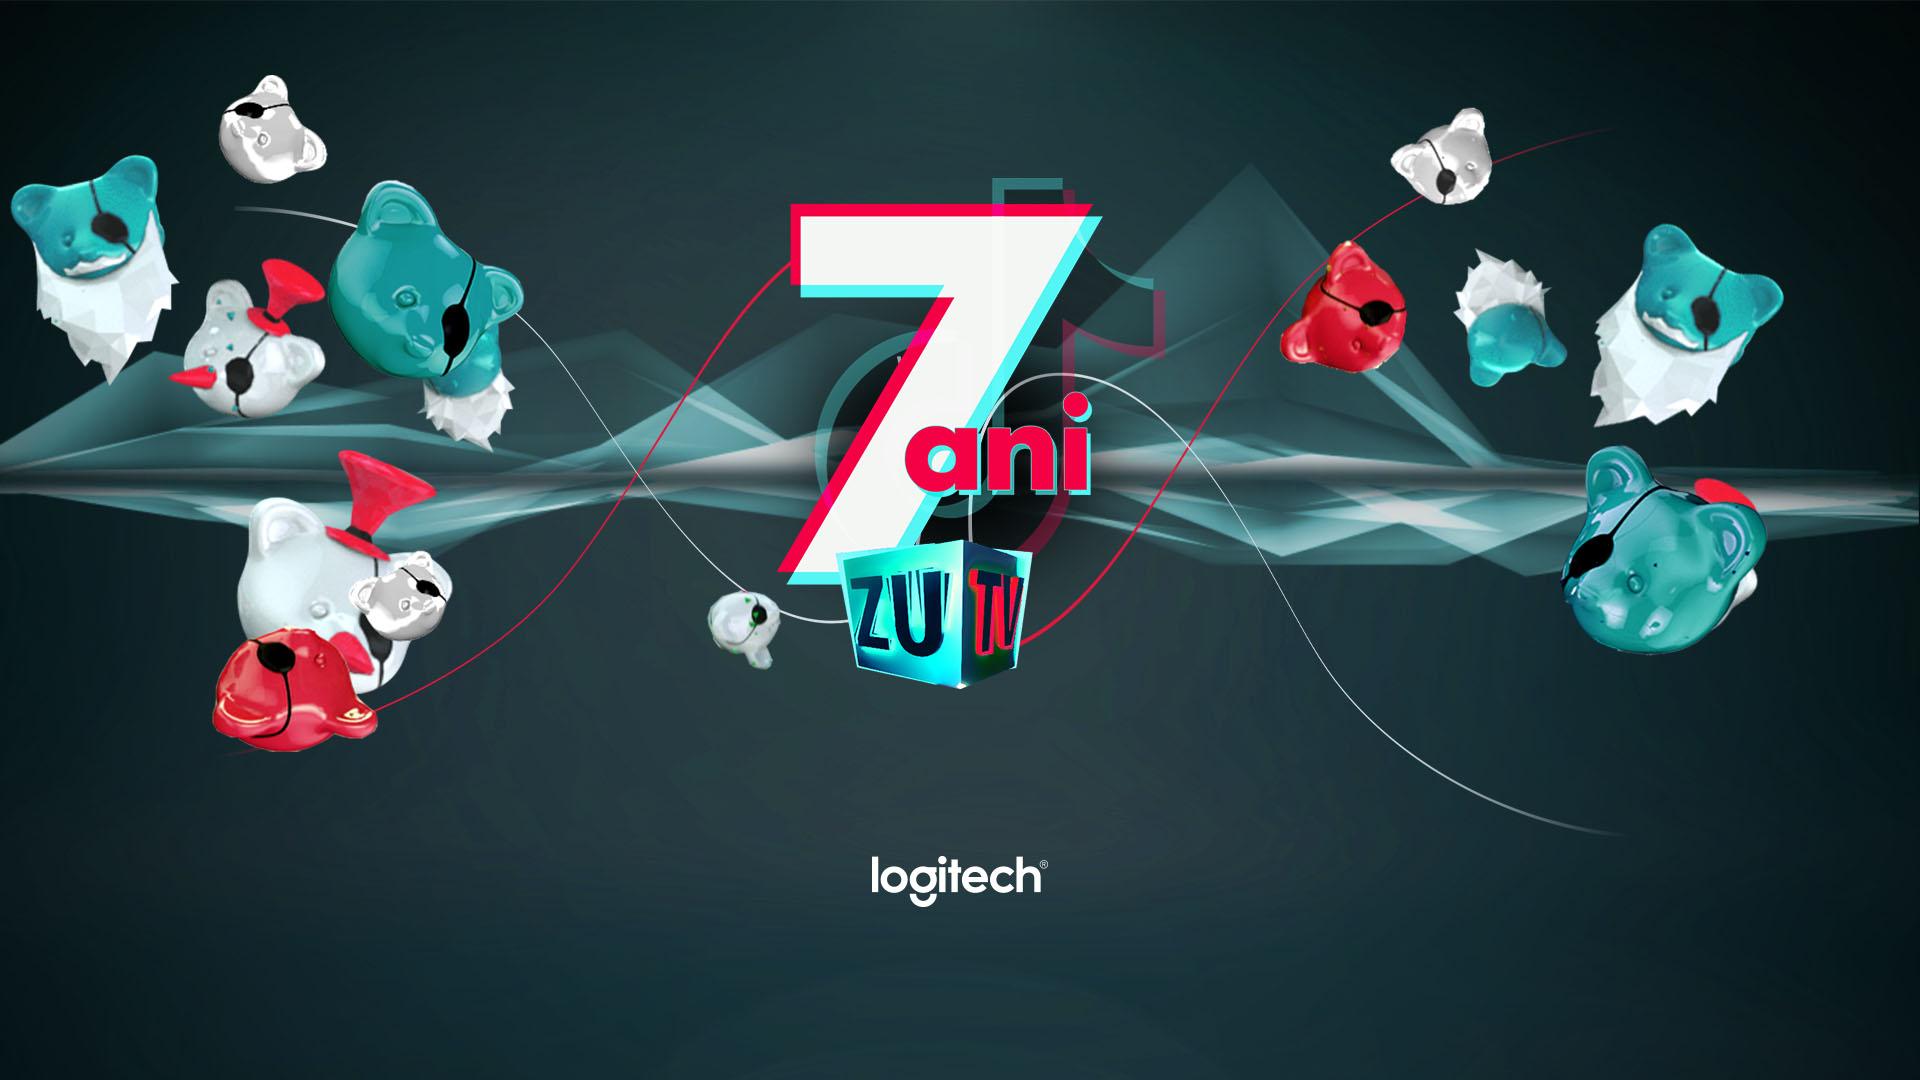 ZU TV dă startul campaniei “7 ani de ZU TV” şi lansează contul official de TikTok al canalului